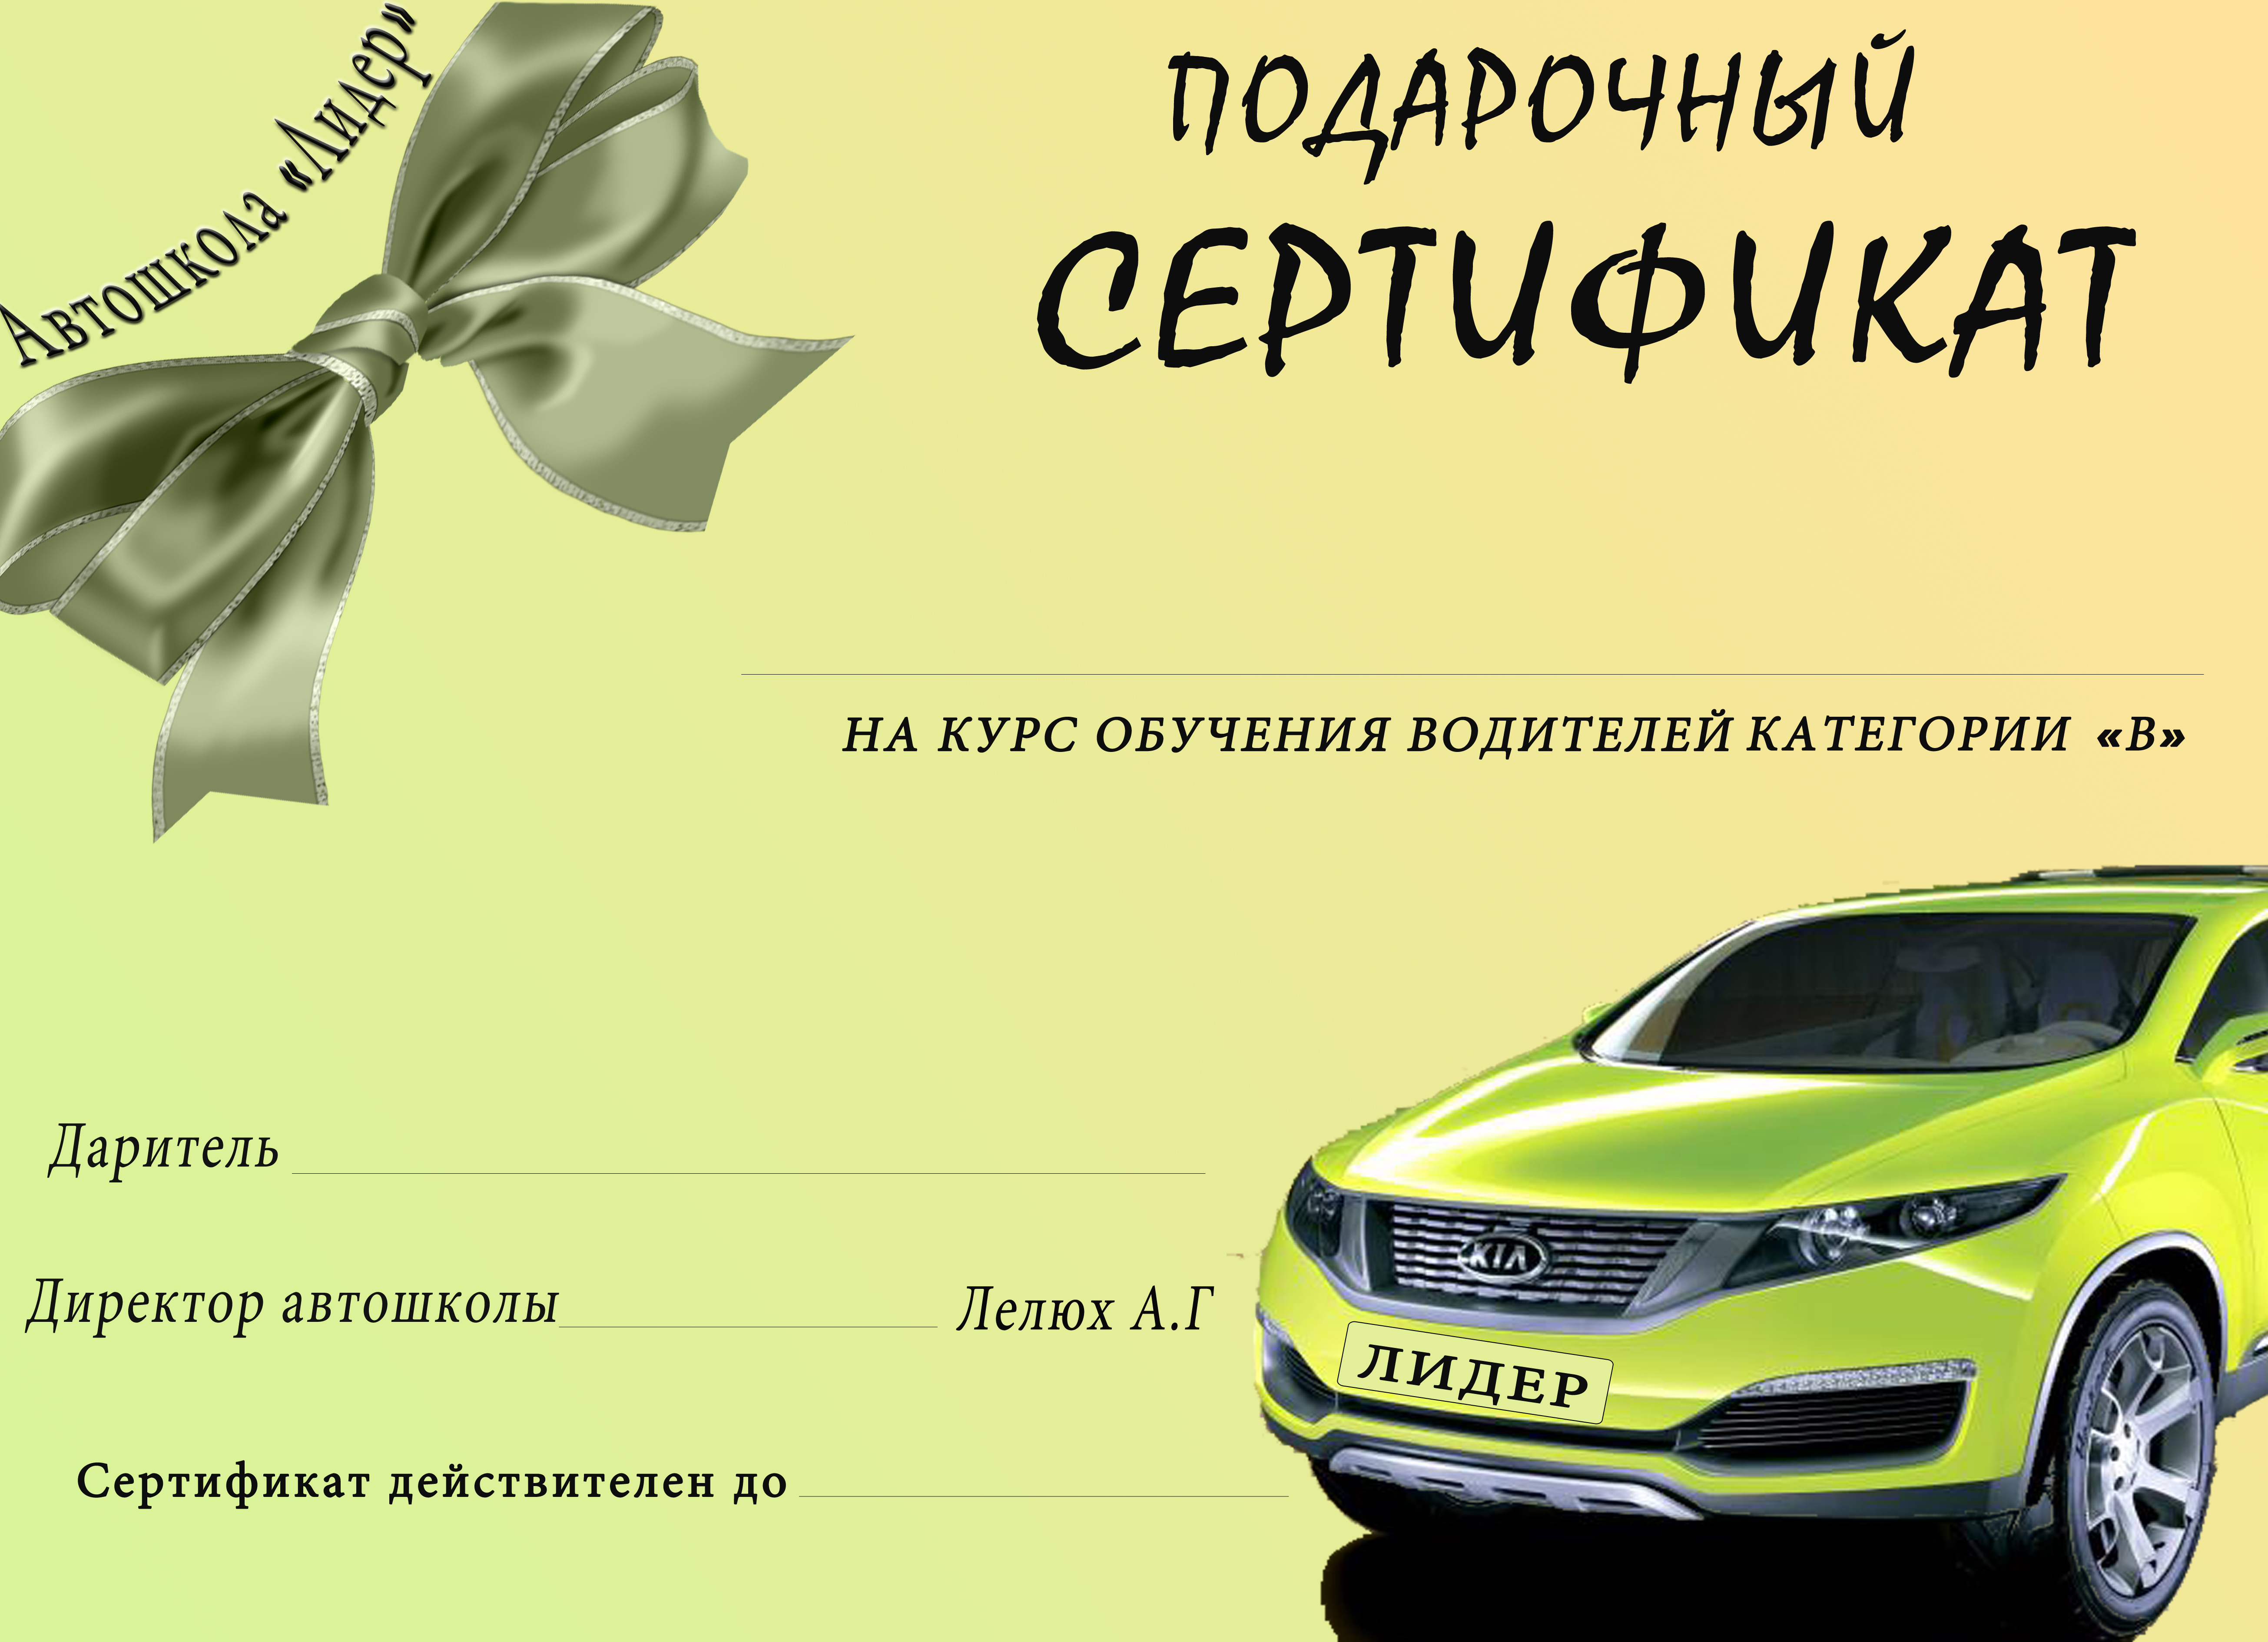 Подарочный сертификат на автомобиль